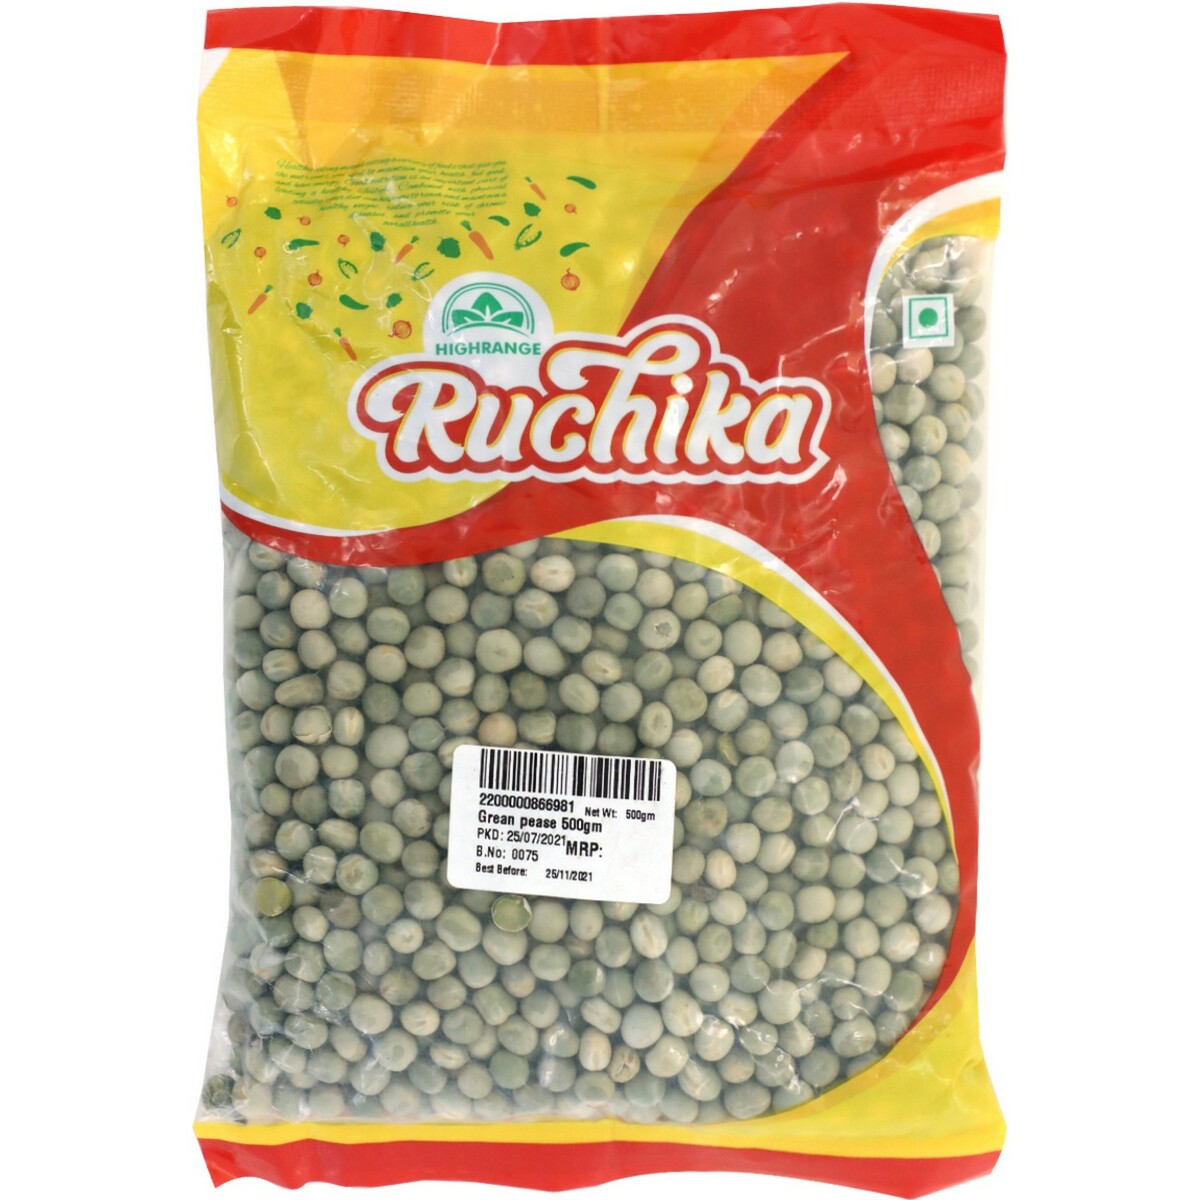 Ruchika Green Peas 500g